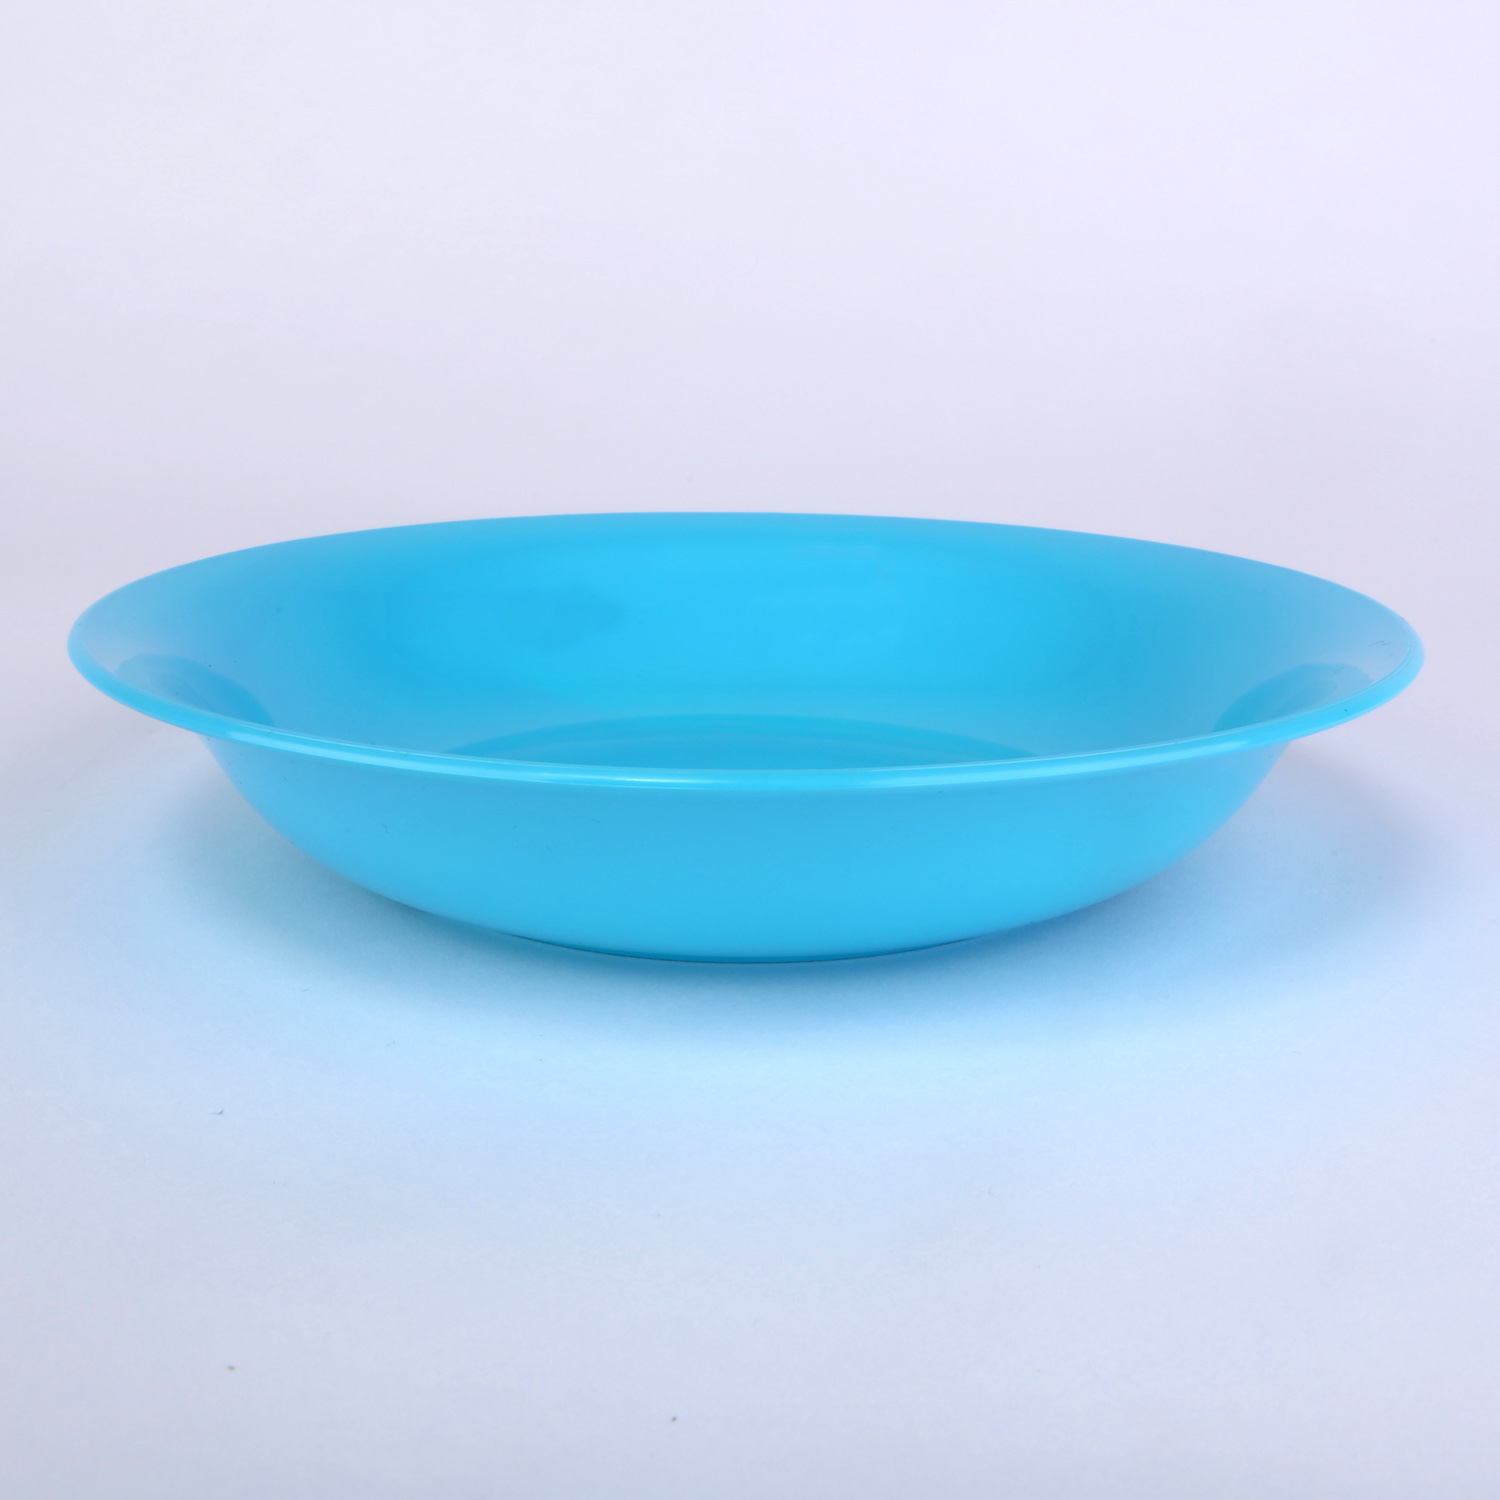 vaLon Zephyr Suppenteller aus Thermoplastischem Kunststoff in der Farbe blau frei von BPA, Dioxin und Formaldehyd